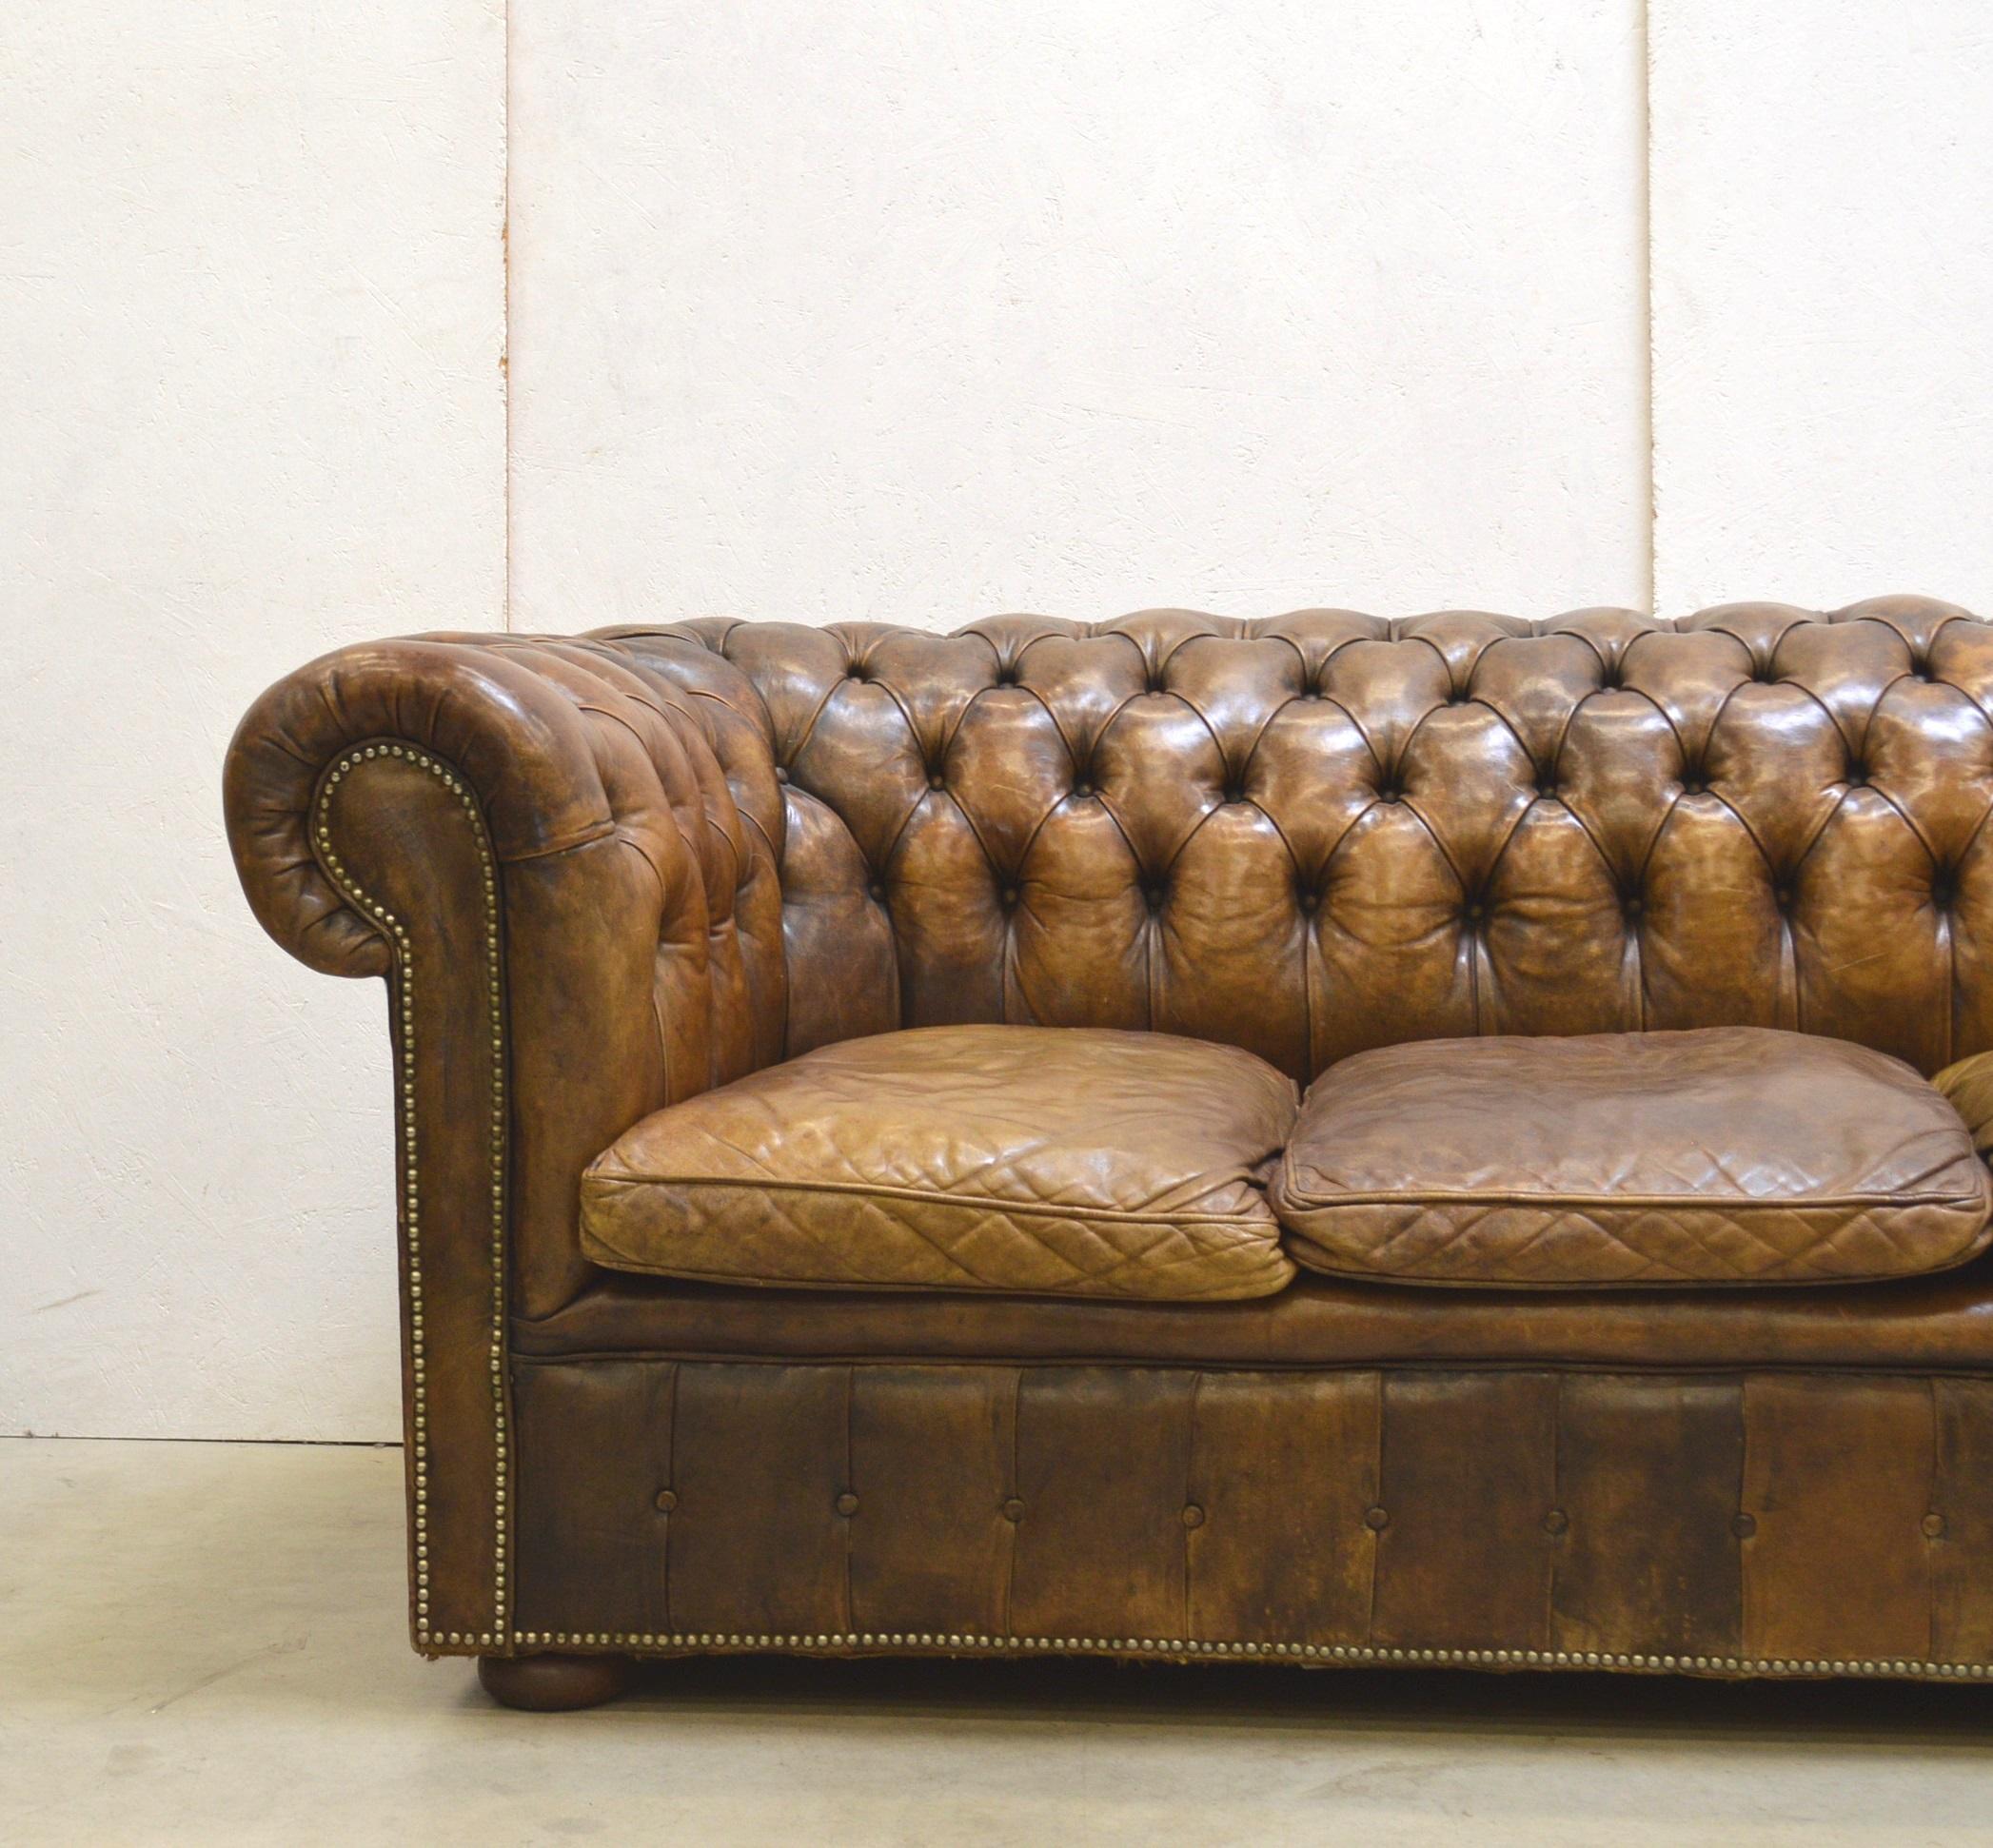 Vintage Chesterfield Sofa original made in England mit einer erstaunlichen Patina.
Das Stück kommt mit einem sehr dicken handgefärbten Leder, die Kissen sind mit Entenfedern gefüllt.

Ein handgefertigtes Meisterwerk!

Die Dimensionen sind: